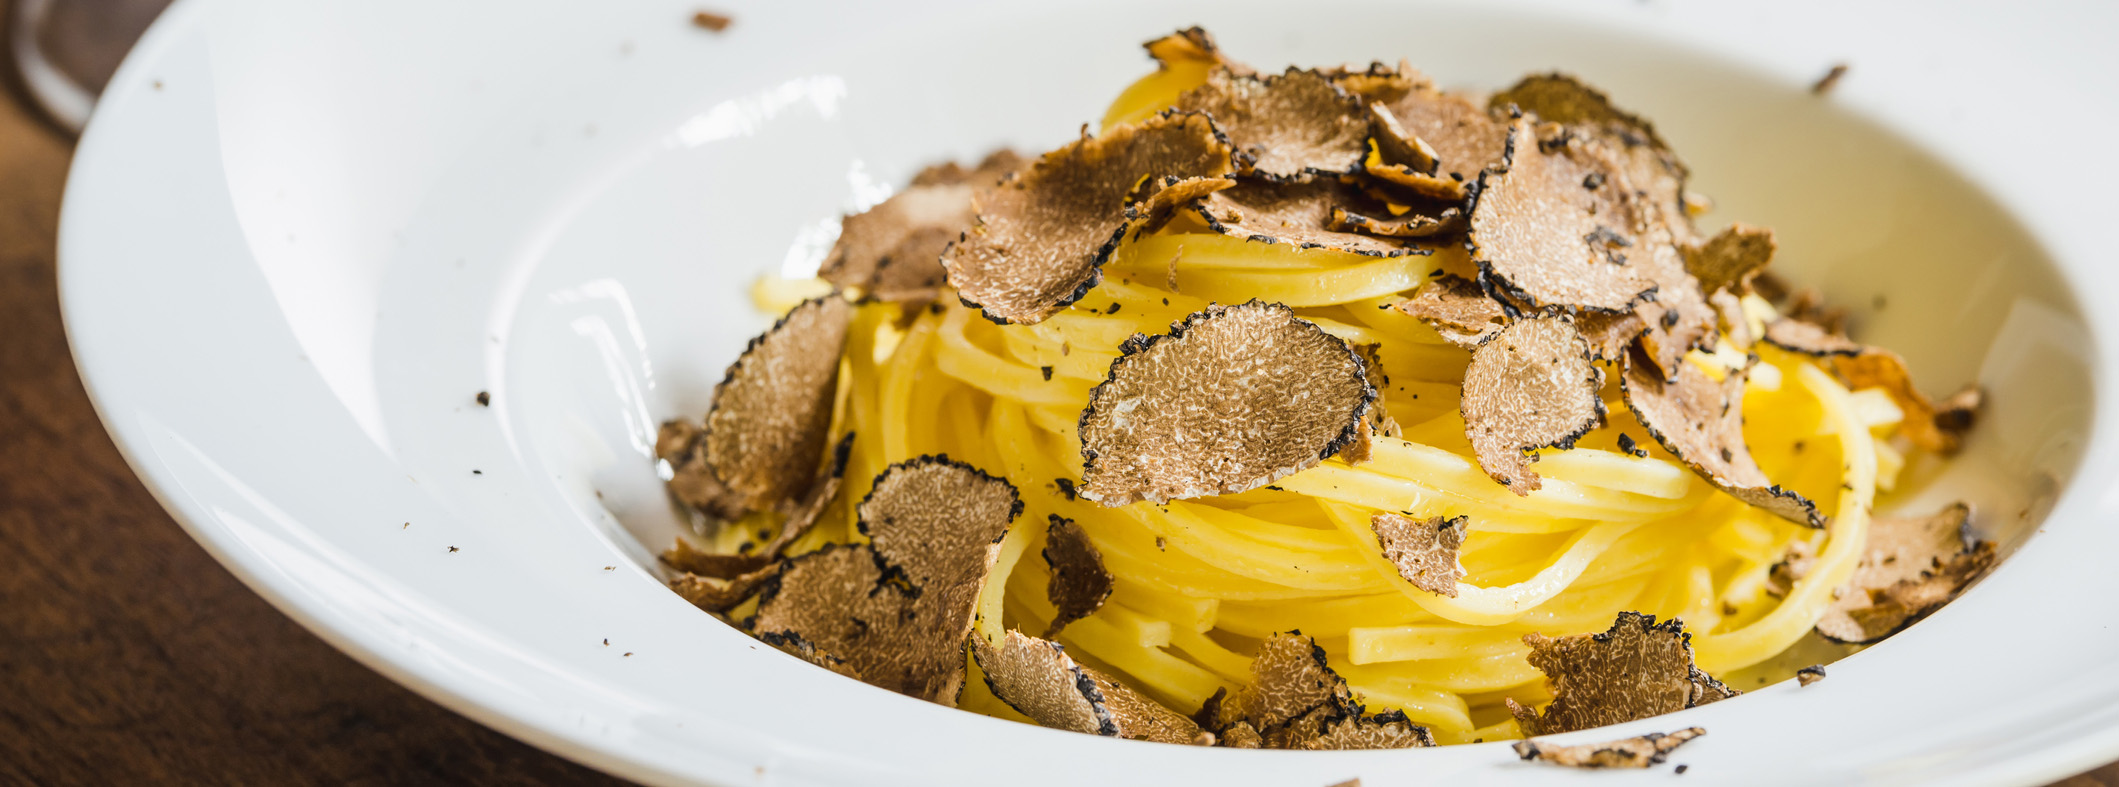 Bilde av pasta med sopp og trøffel